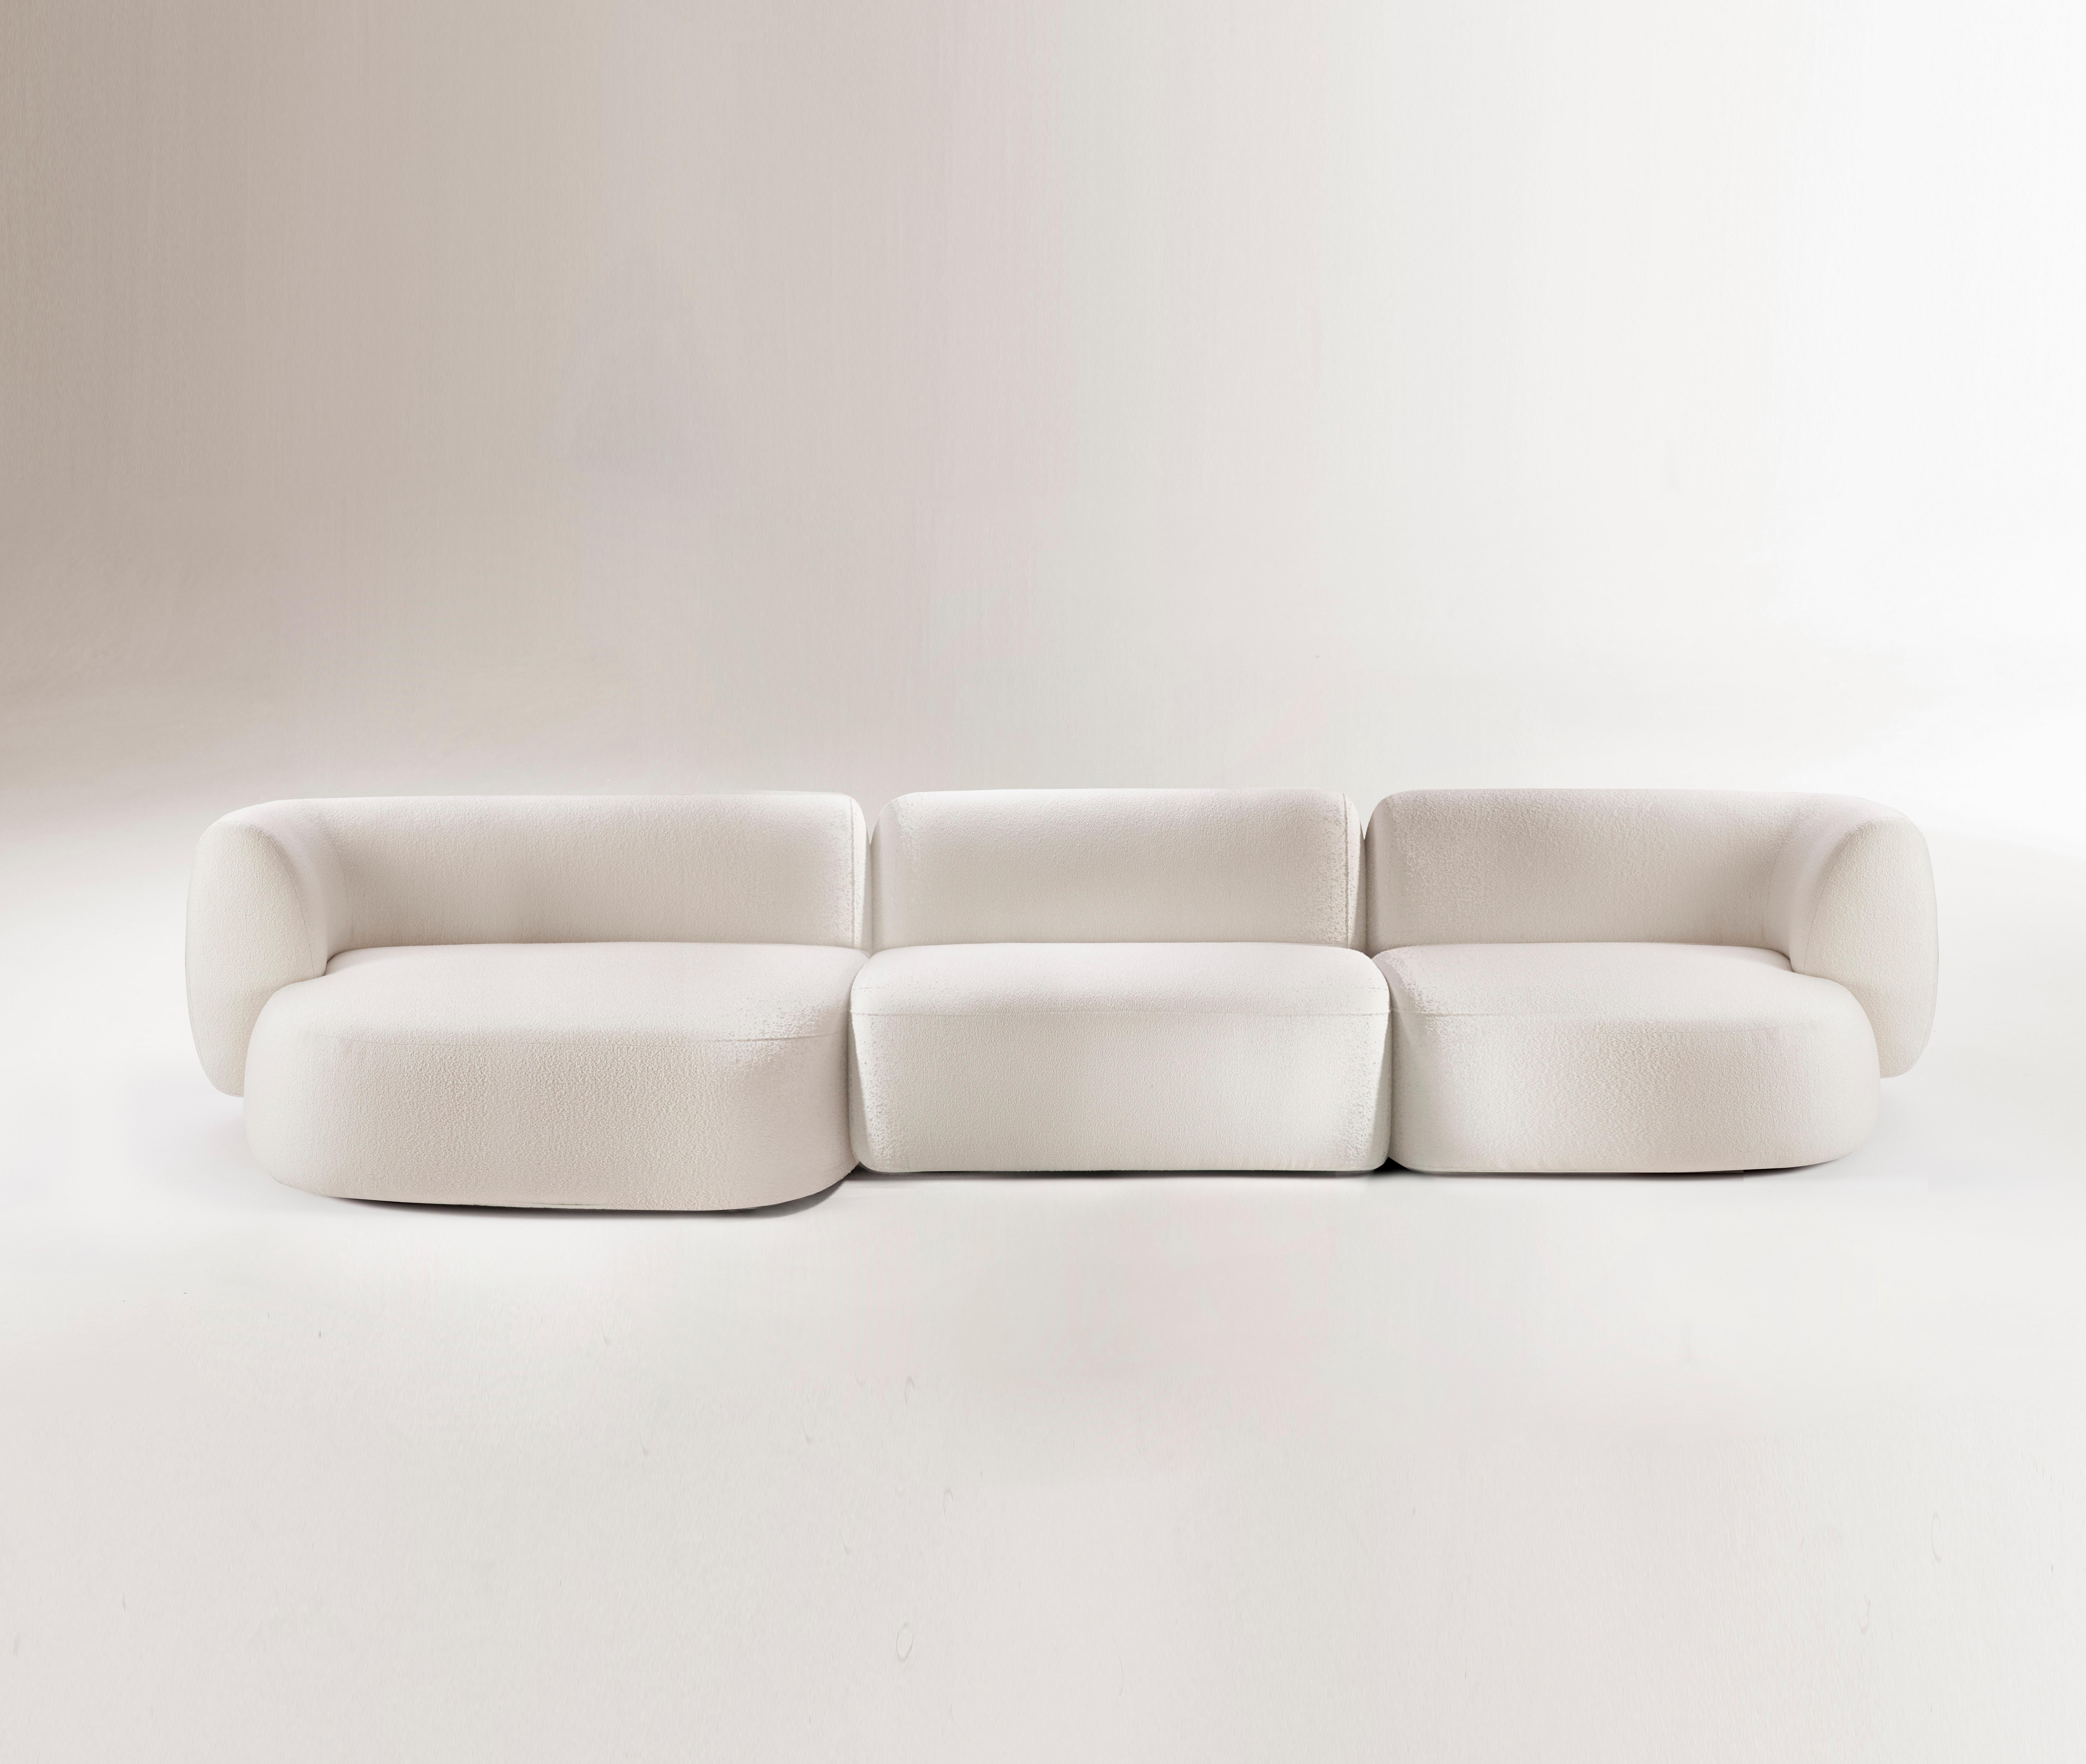 Hug modulares sofa von Collector
Abmessungen: B 370 x T 160 x H 74 cm
Chaise Longue XL Modul: B 150 x T 160 x H 74 cm.
Modul für das zentrale Element: B 100 x T 98 x H 74 cm. 
Modul DX-Anschlusselement: B 120 x T 98 x H 74 cm.
MATERIALIEN: